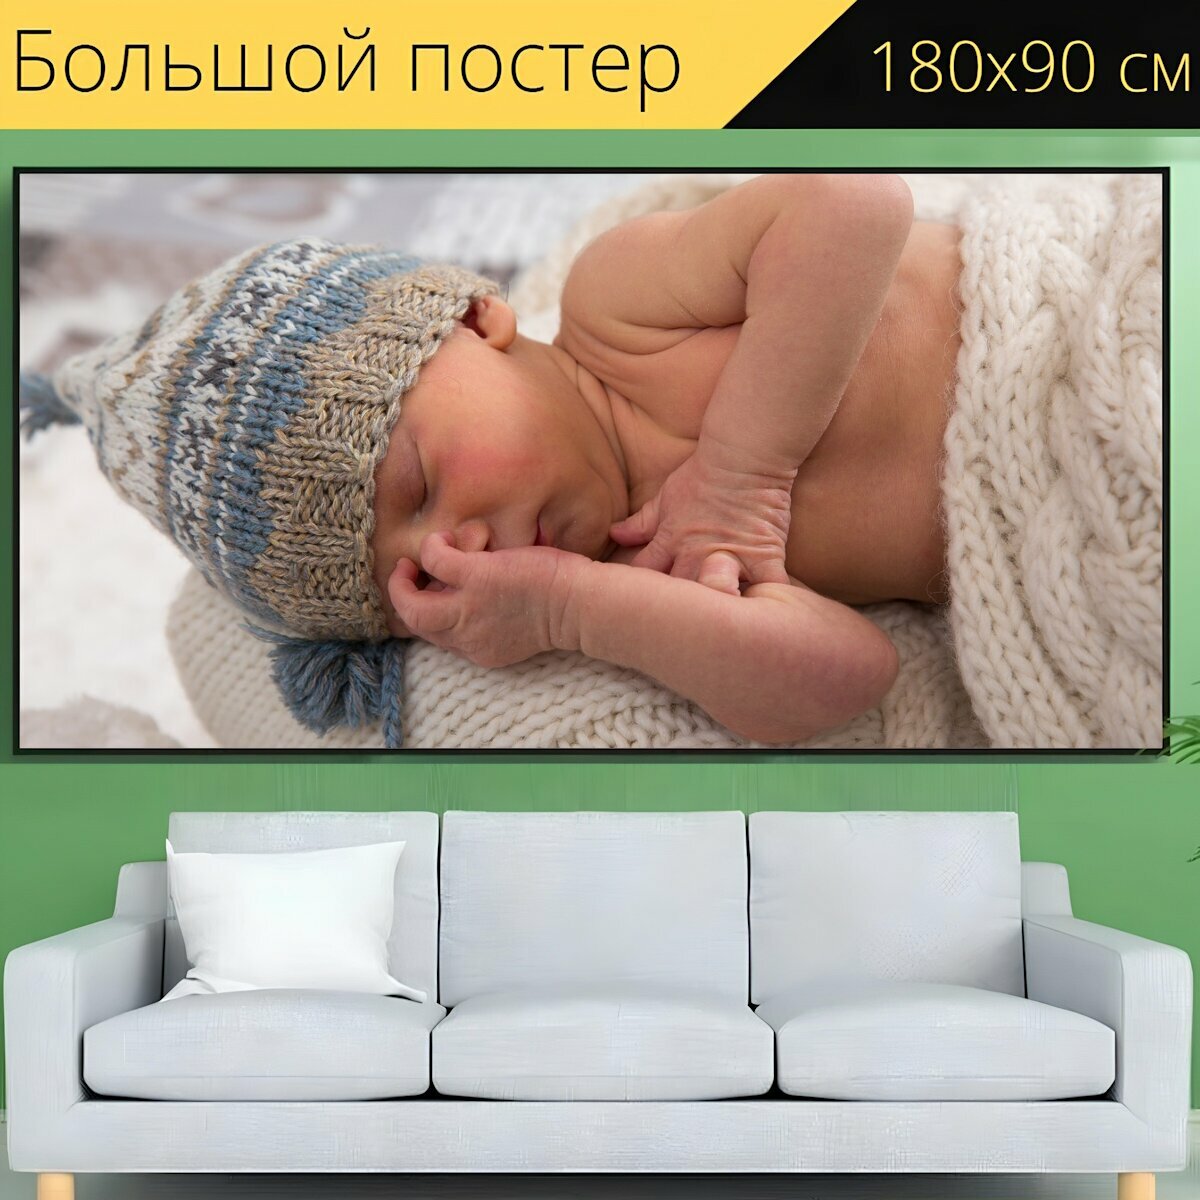 Большой постер "Детка, новорожденный, одеяло" 180 x 90 см. для интерьера